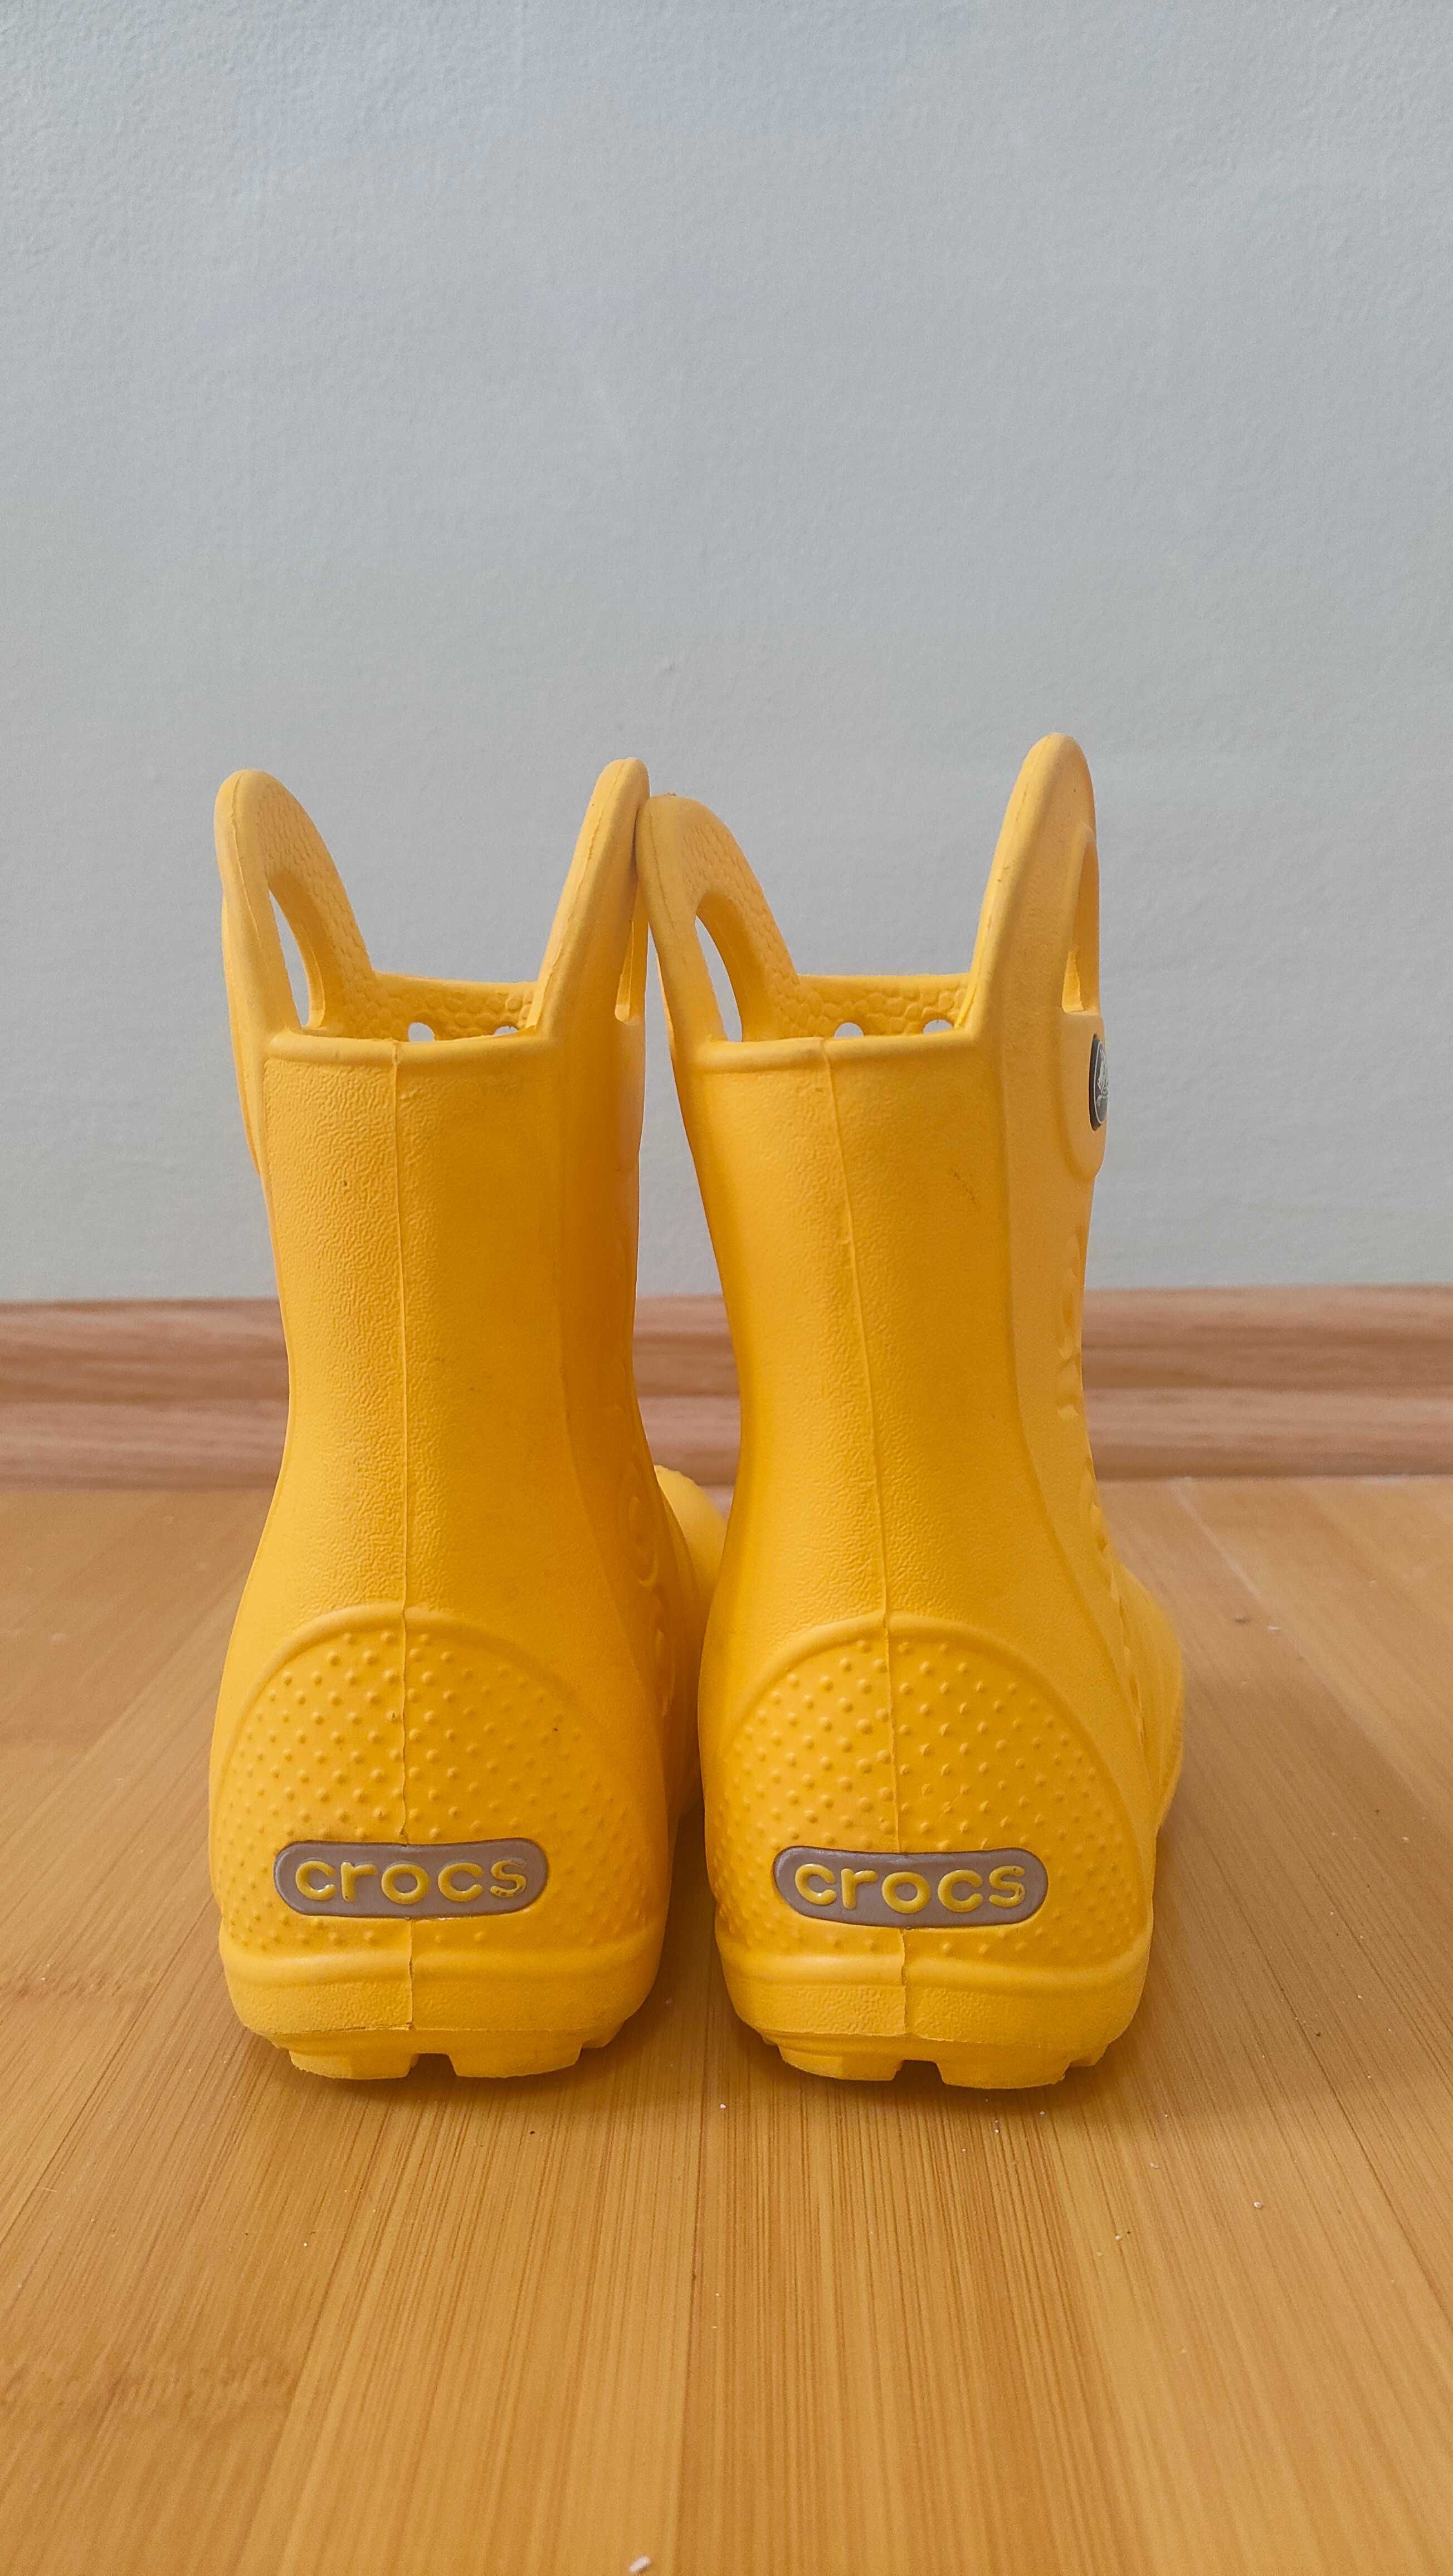 Дитячі гумові чоботи Crocs, розмір С6